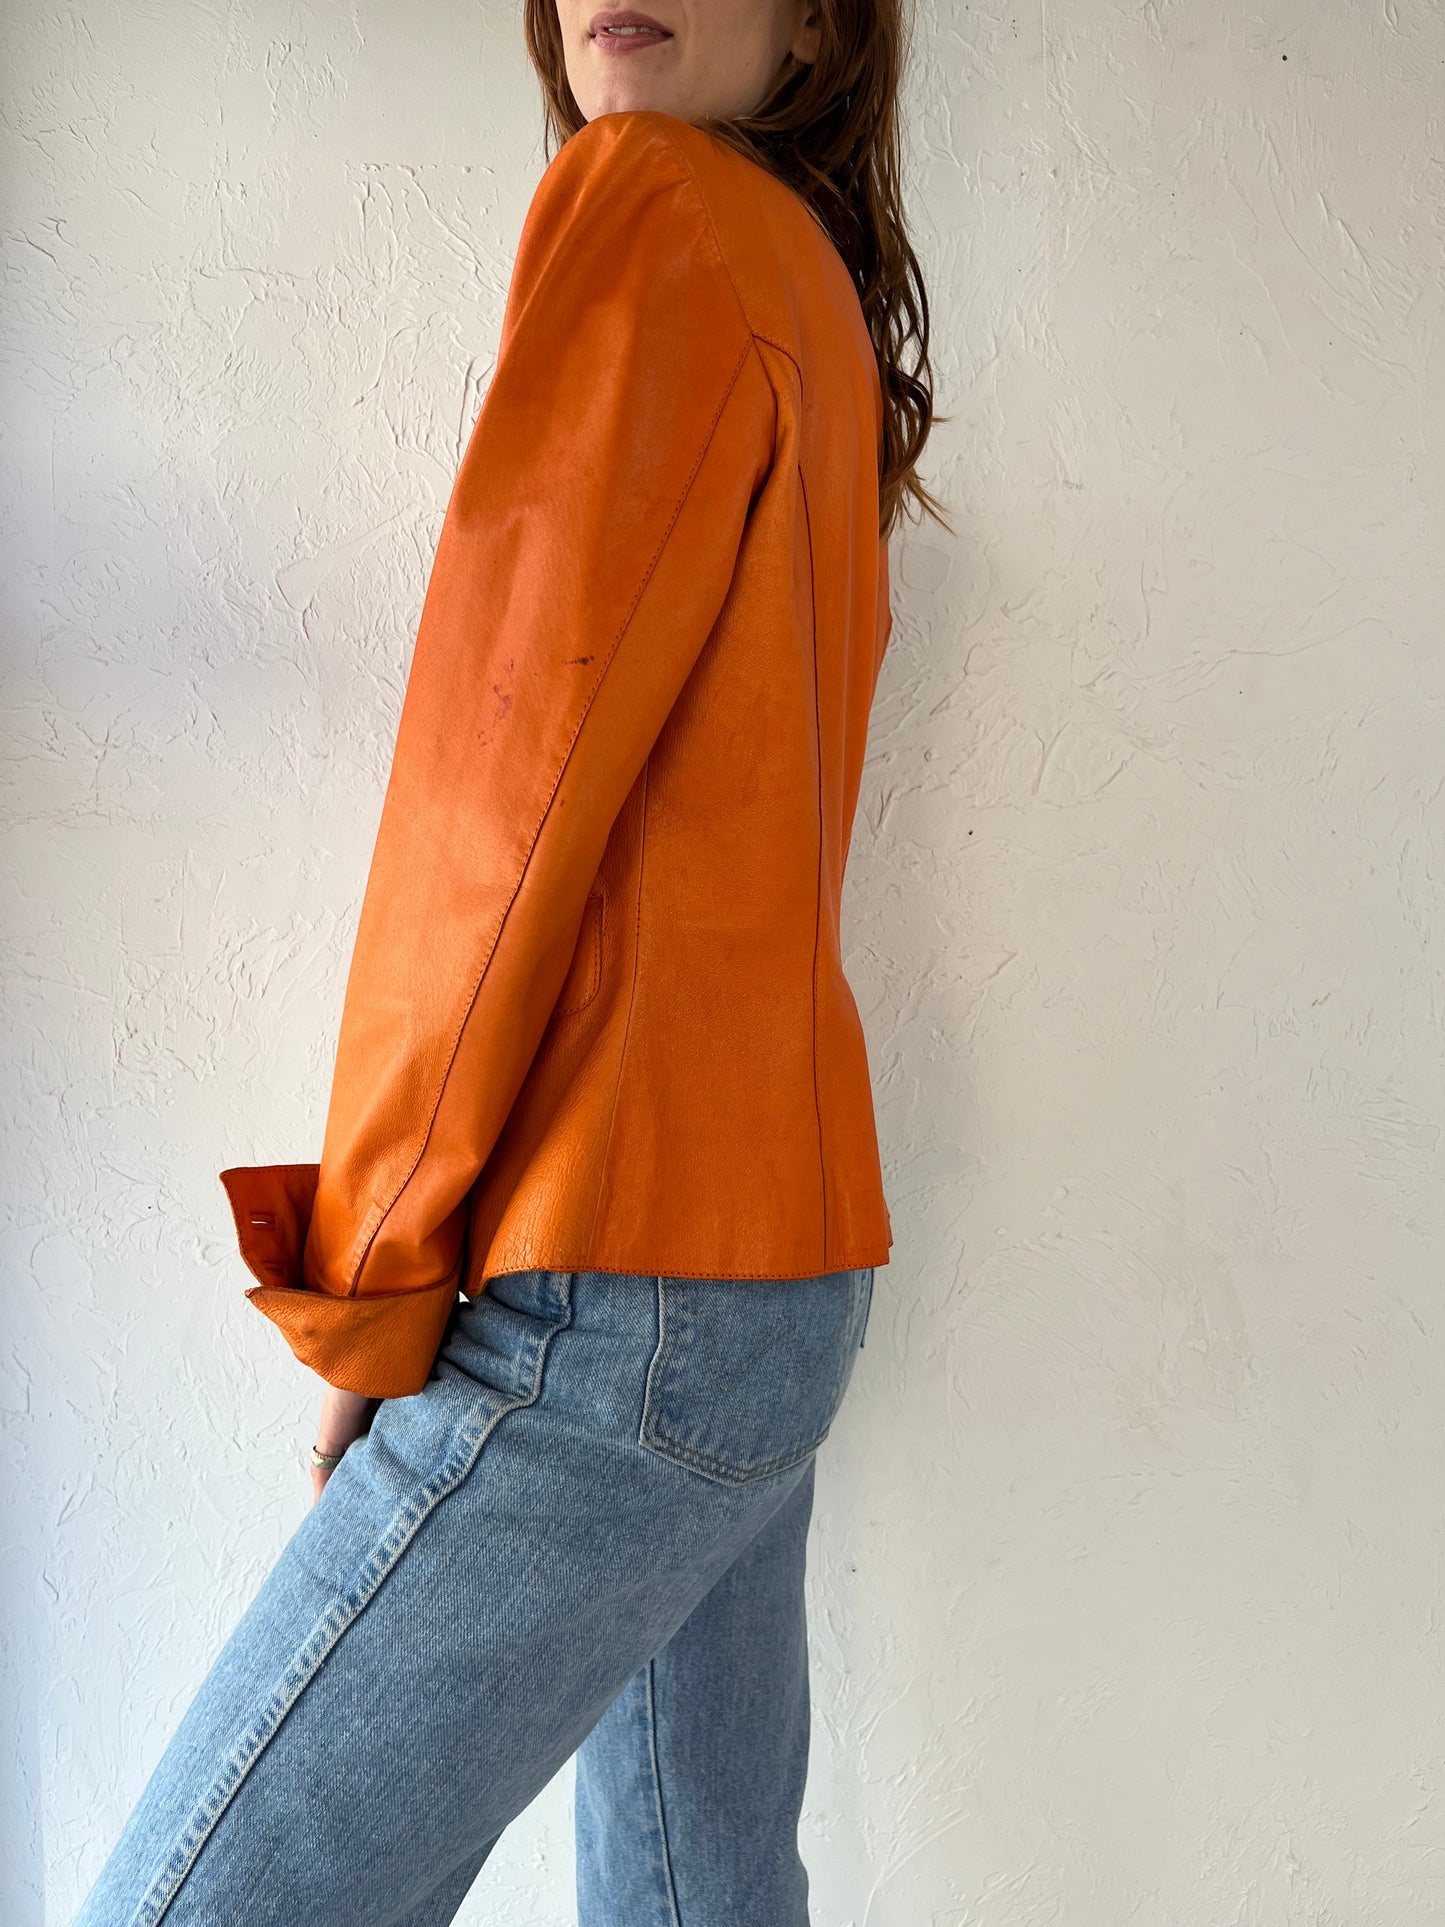 Y2K 'Danier' Orange Leather Blazer Jacket / Small